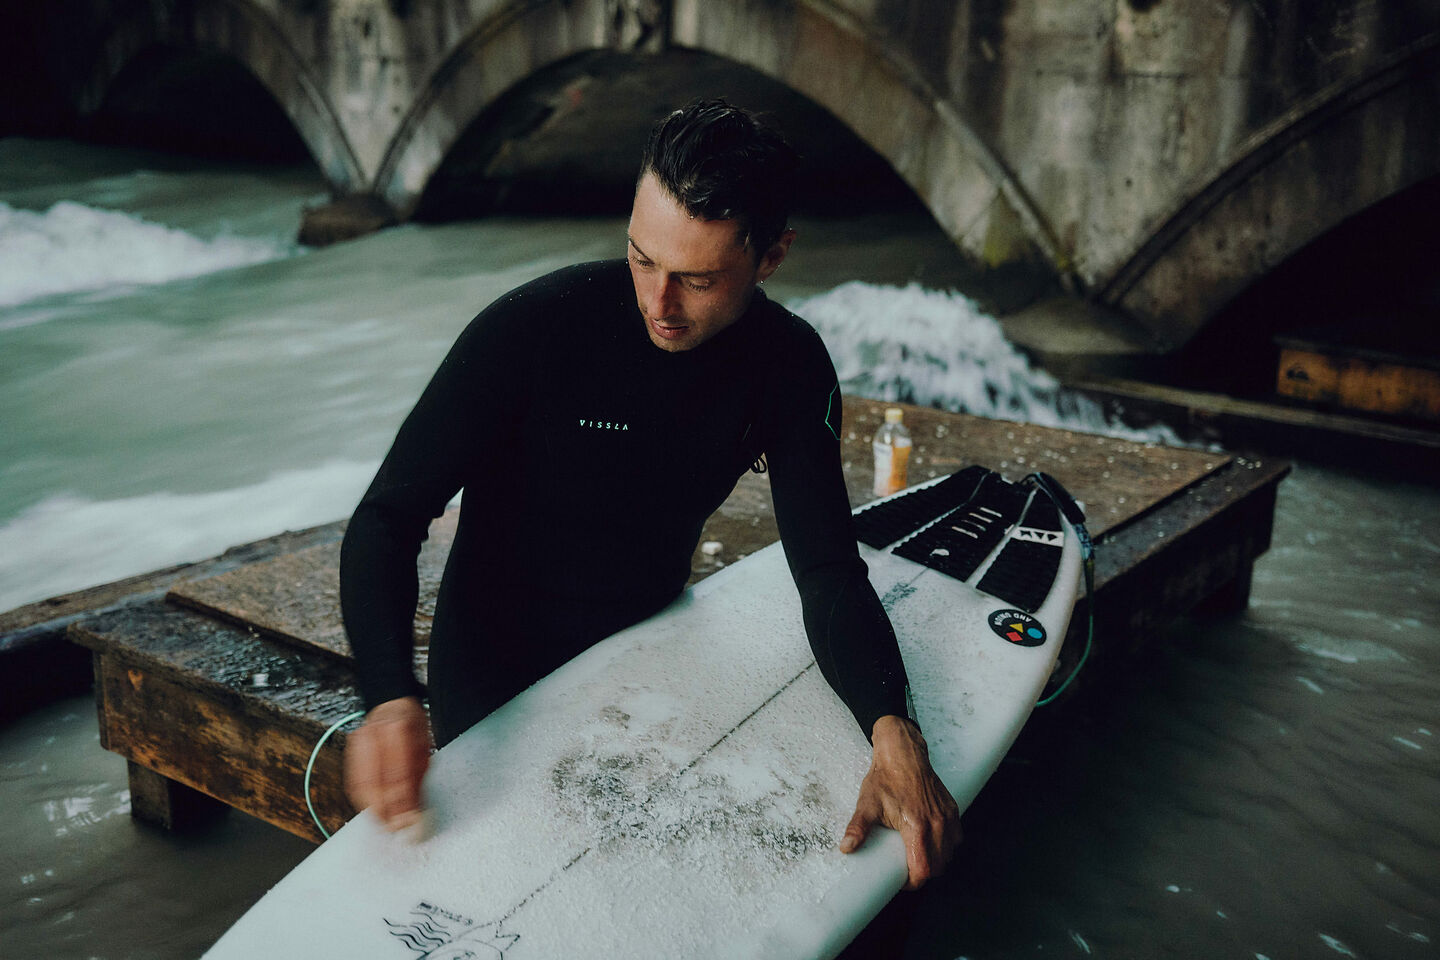 Sebastian Kuhn waxes his surfboard